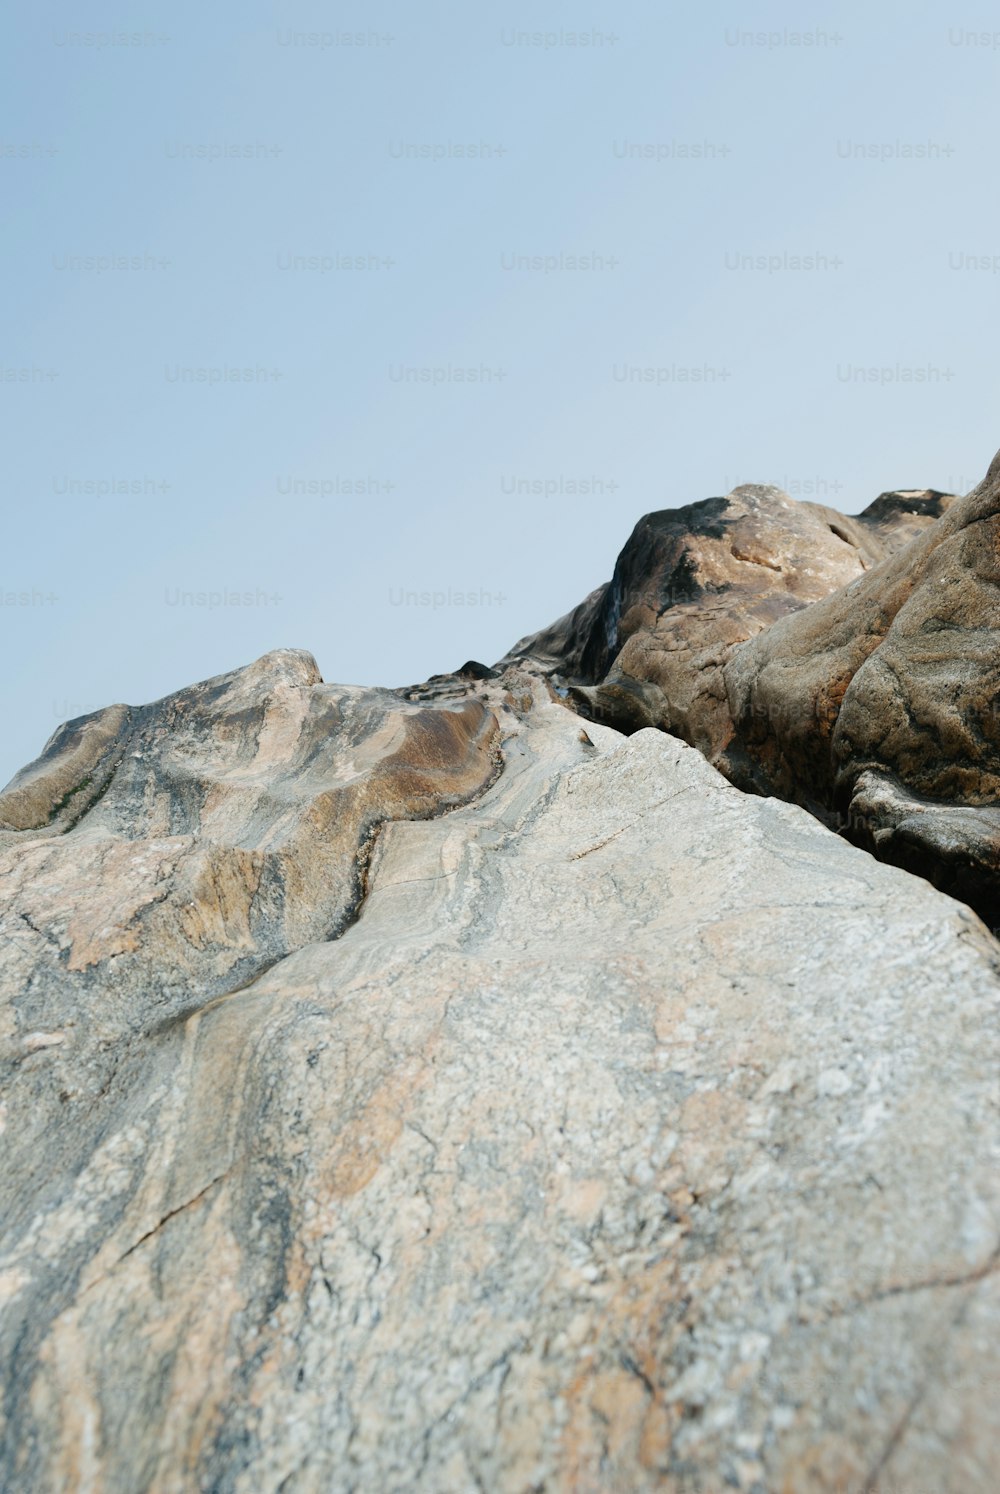 Un pájaro sentado en la cima de una gran roca